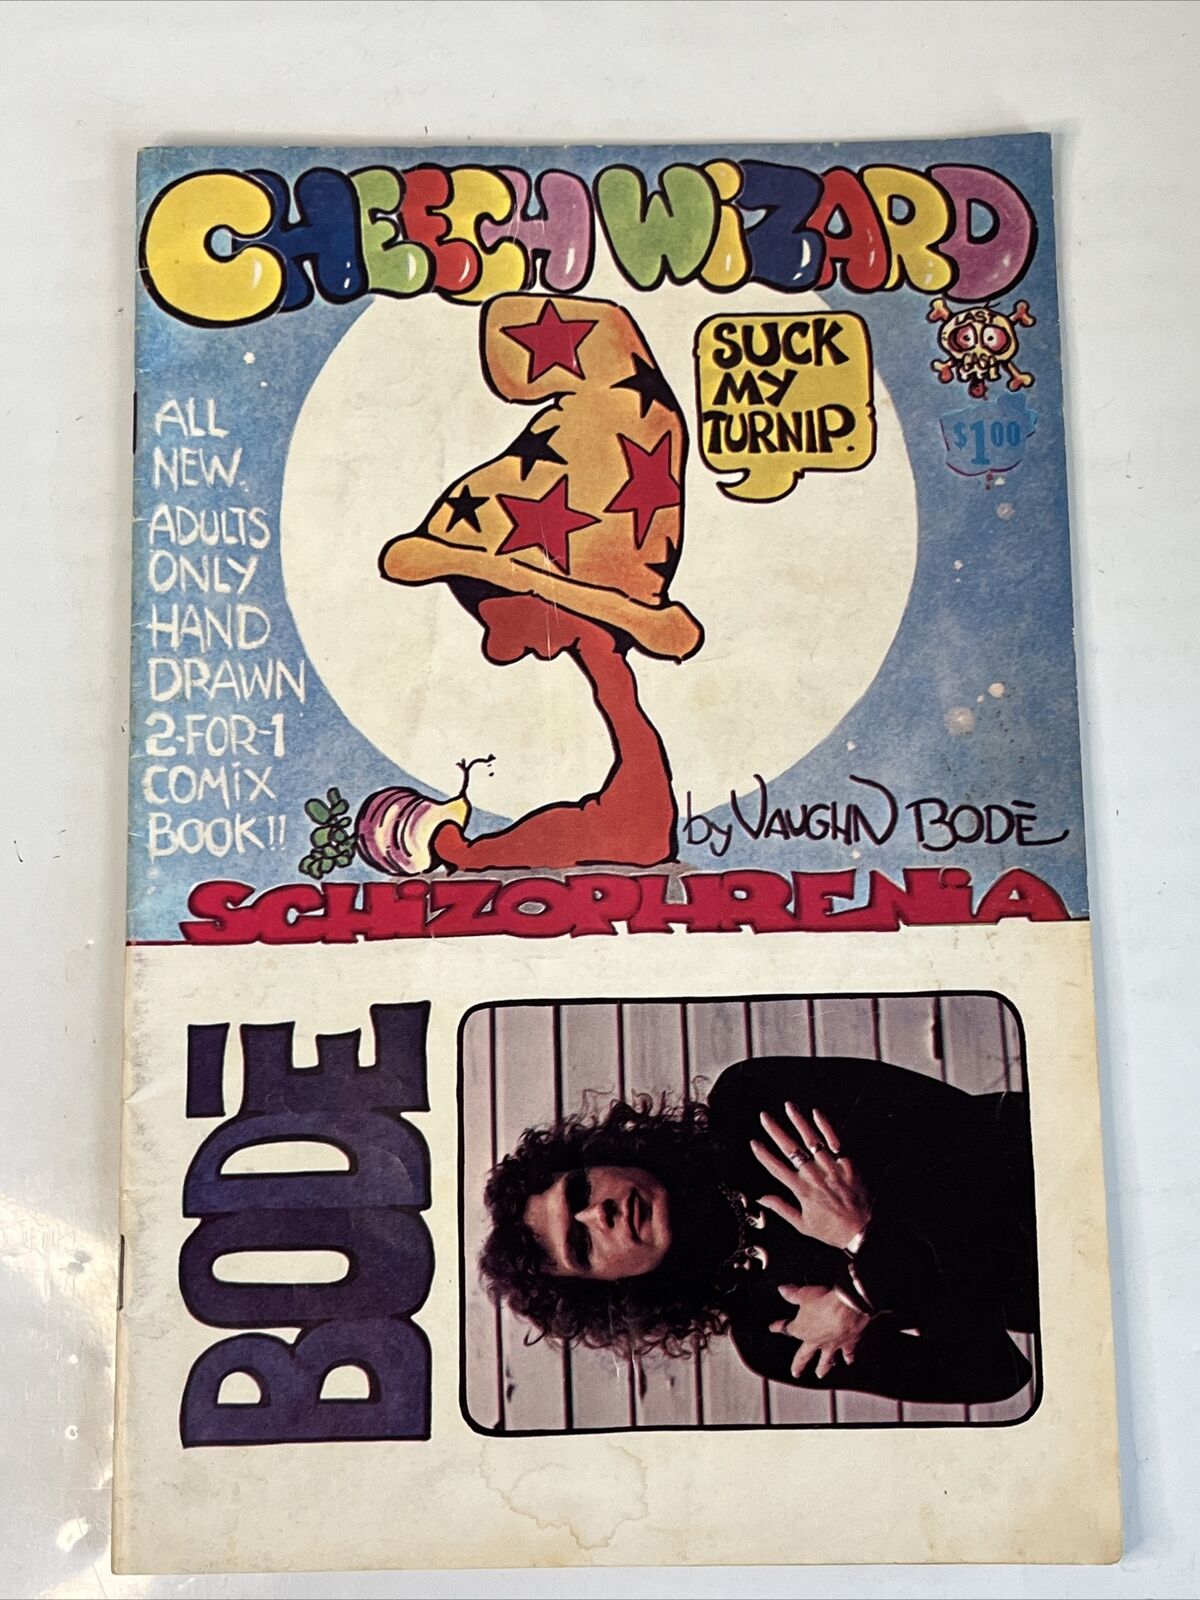 1973 Vaughn Bode Cheech Wizard Adults  Comix Book Vintage Schizophrenia Comic